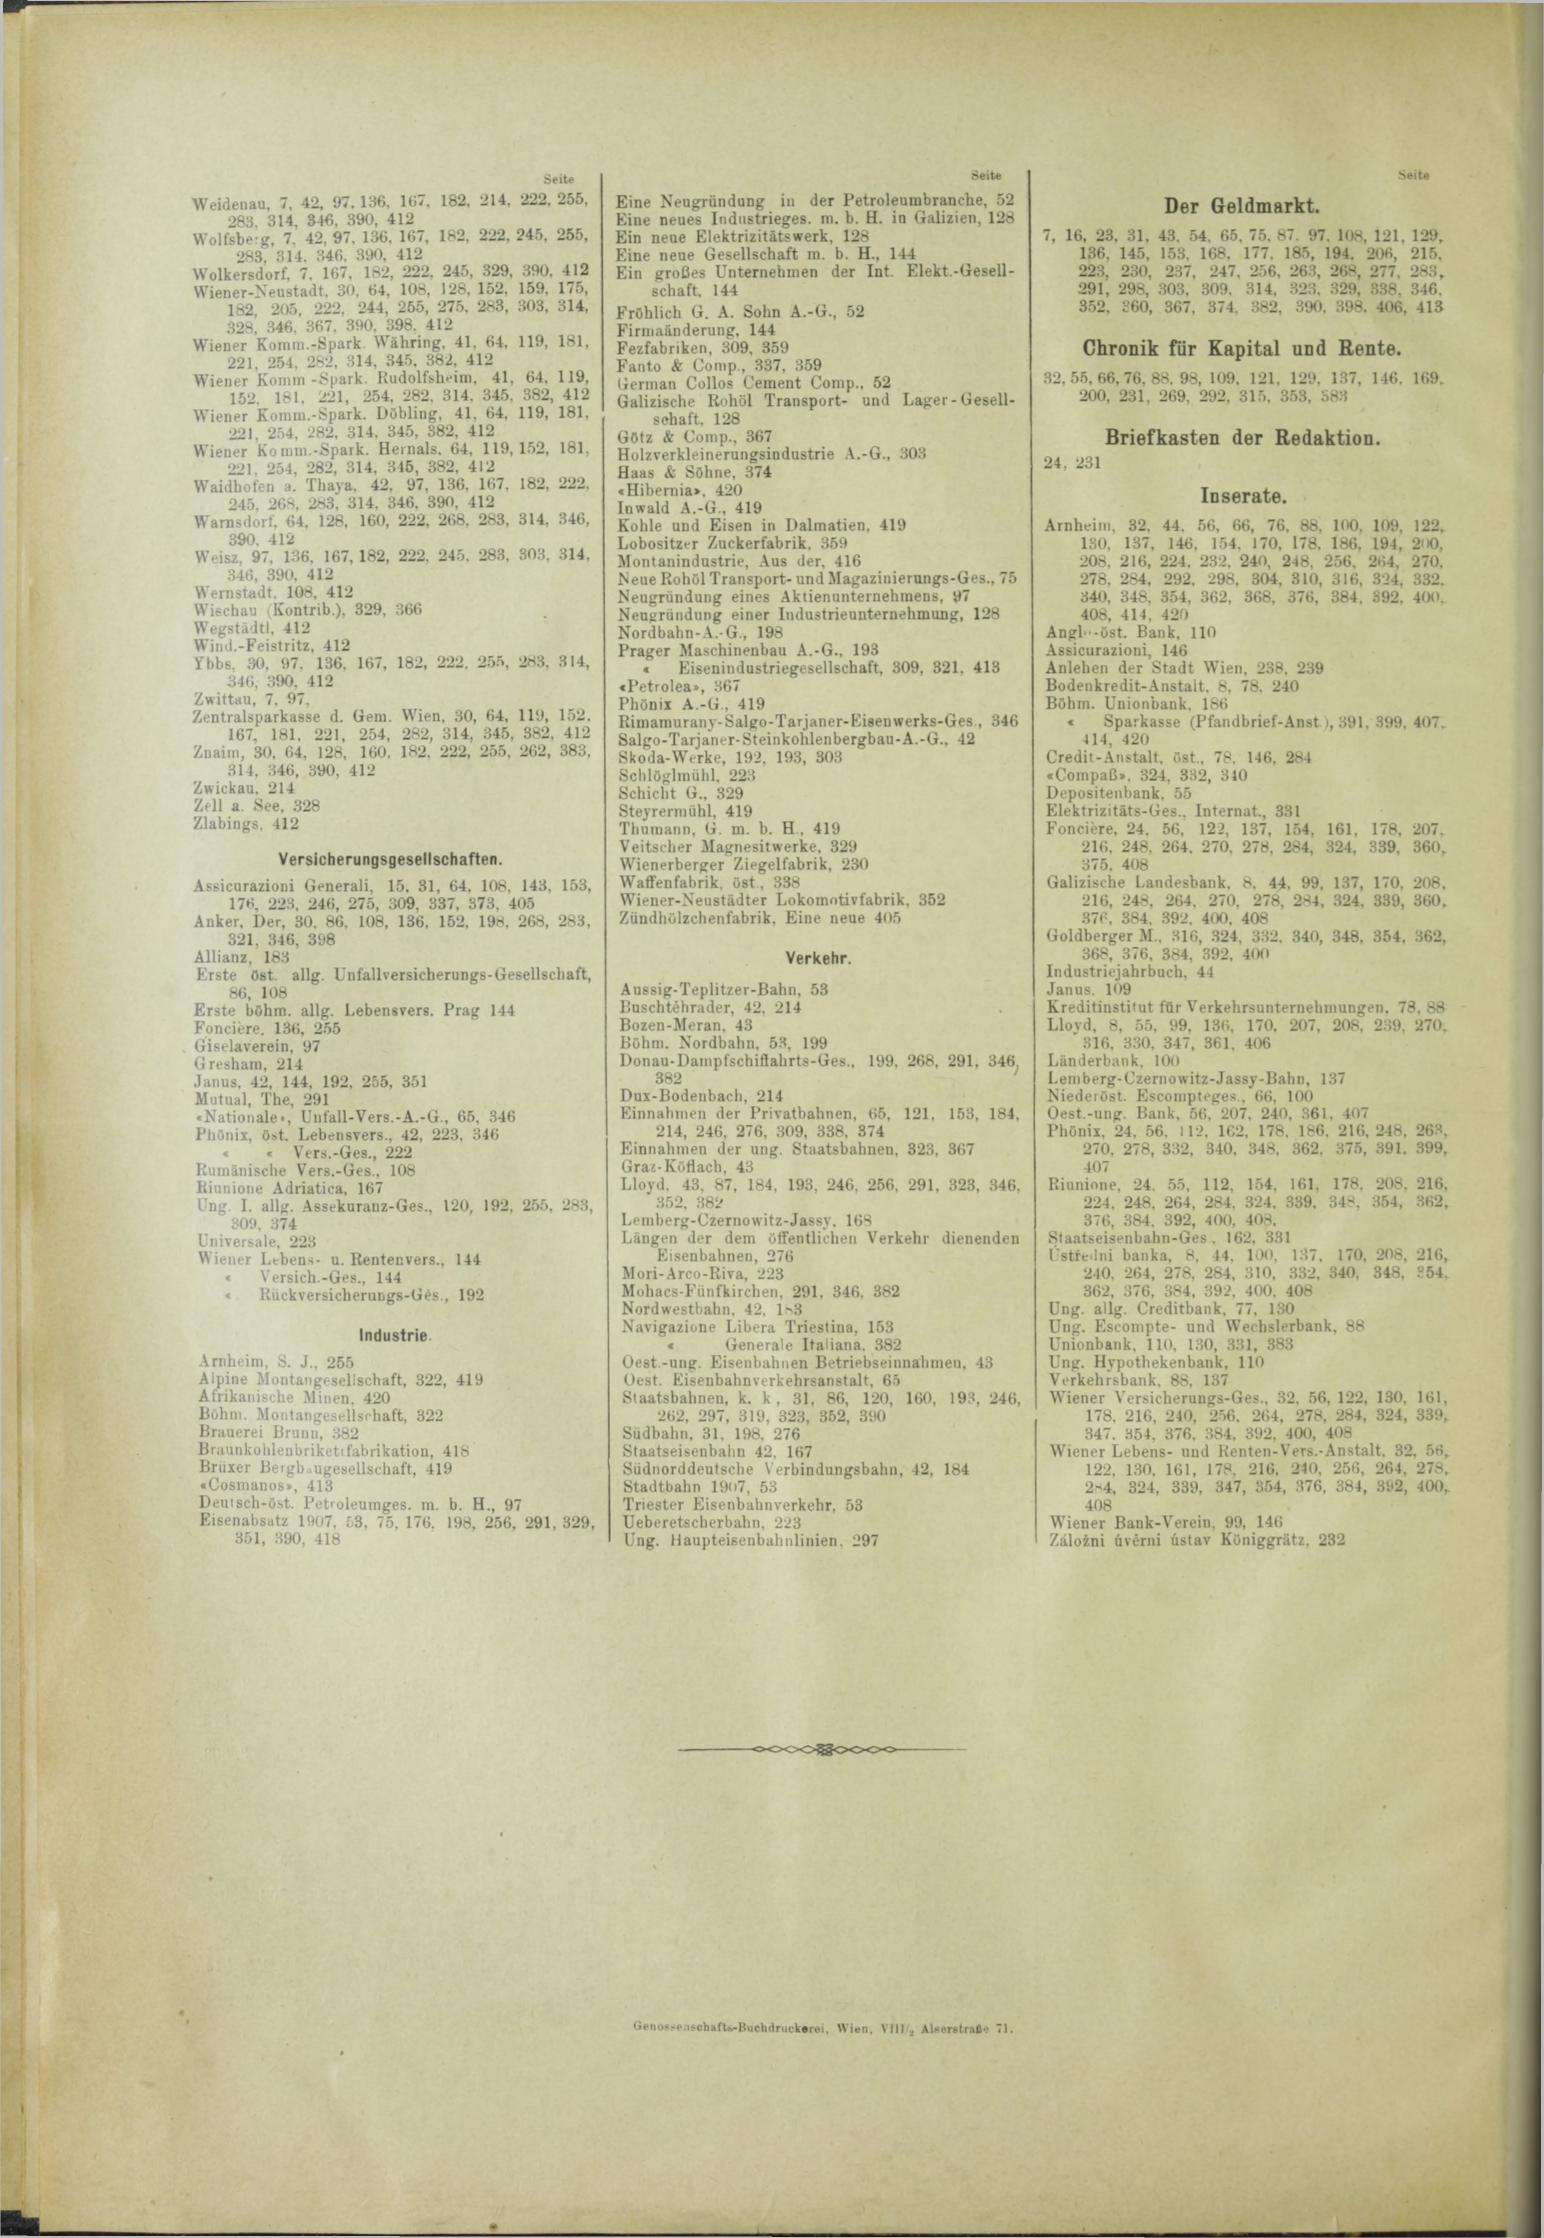 Der Tresor 29.08.1908 - Seite 10